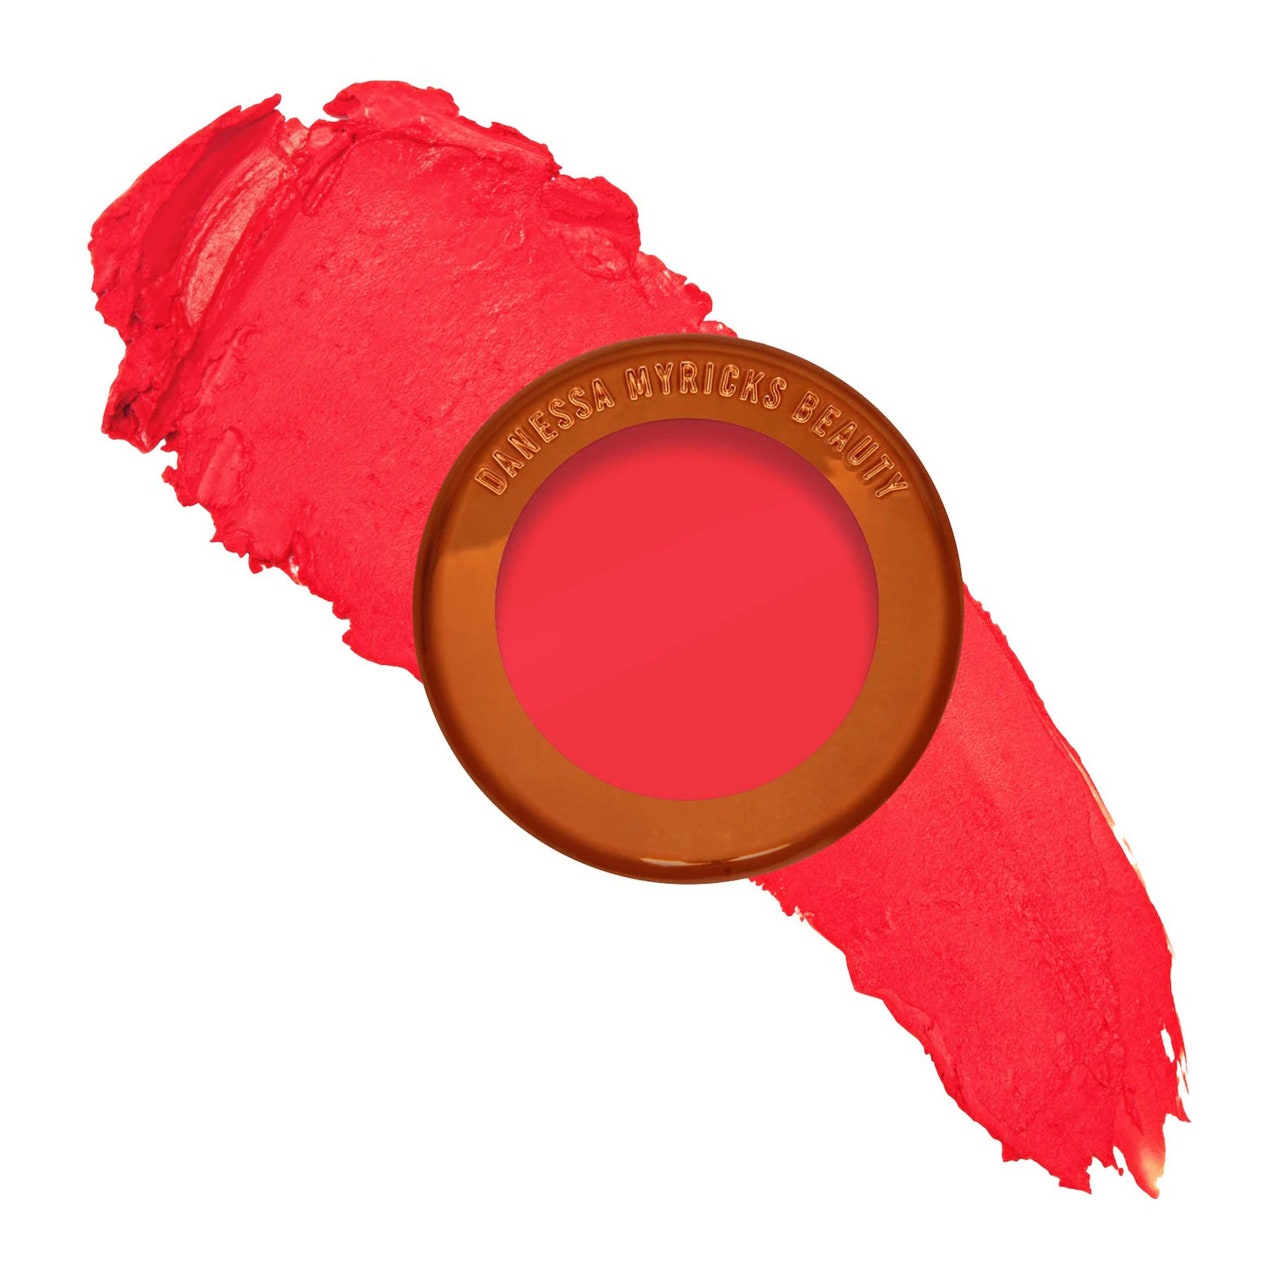 Danessa Myricks Beauty Yummy Skin Blurring Balm Powder Flushed in einem Primadonna-Topf mit neonpinkem Rouge mit diagonalem Muster dahinter auf weißem Hintergrund